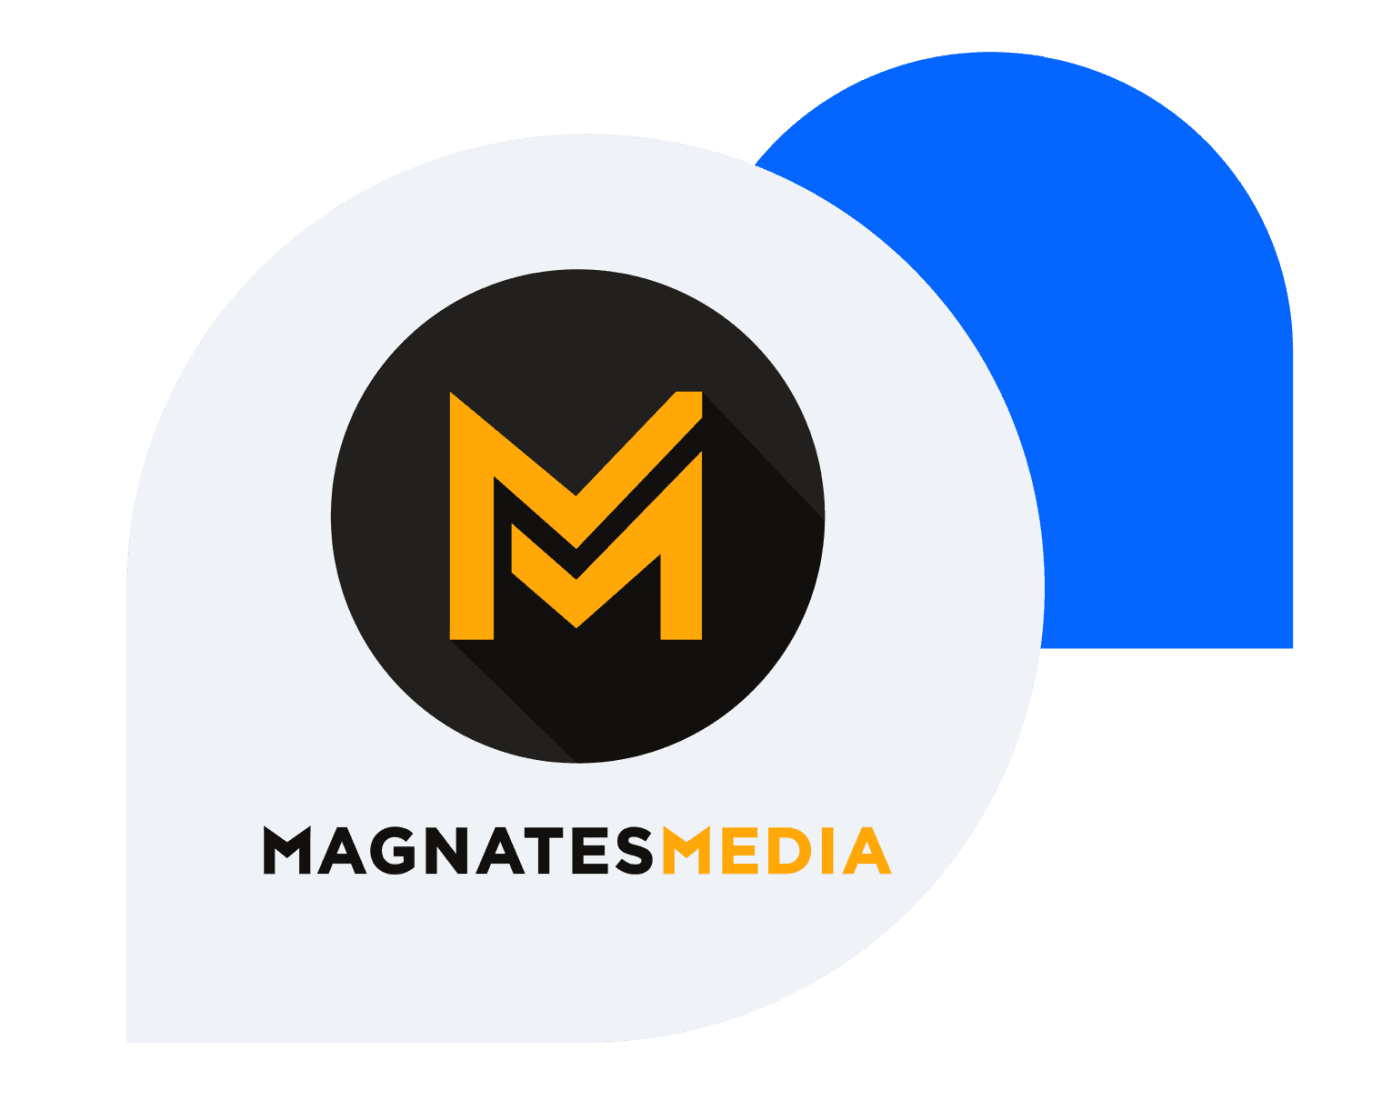 Magnates Media